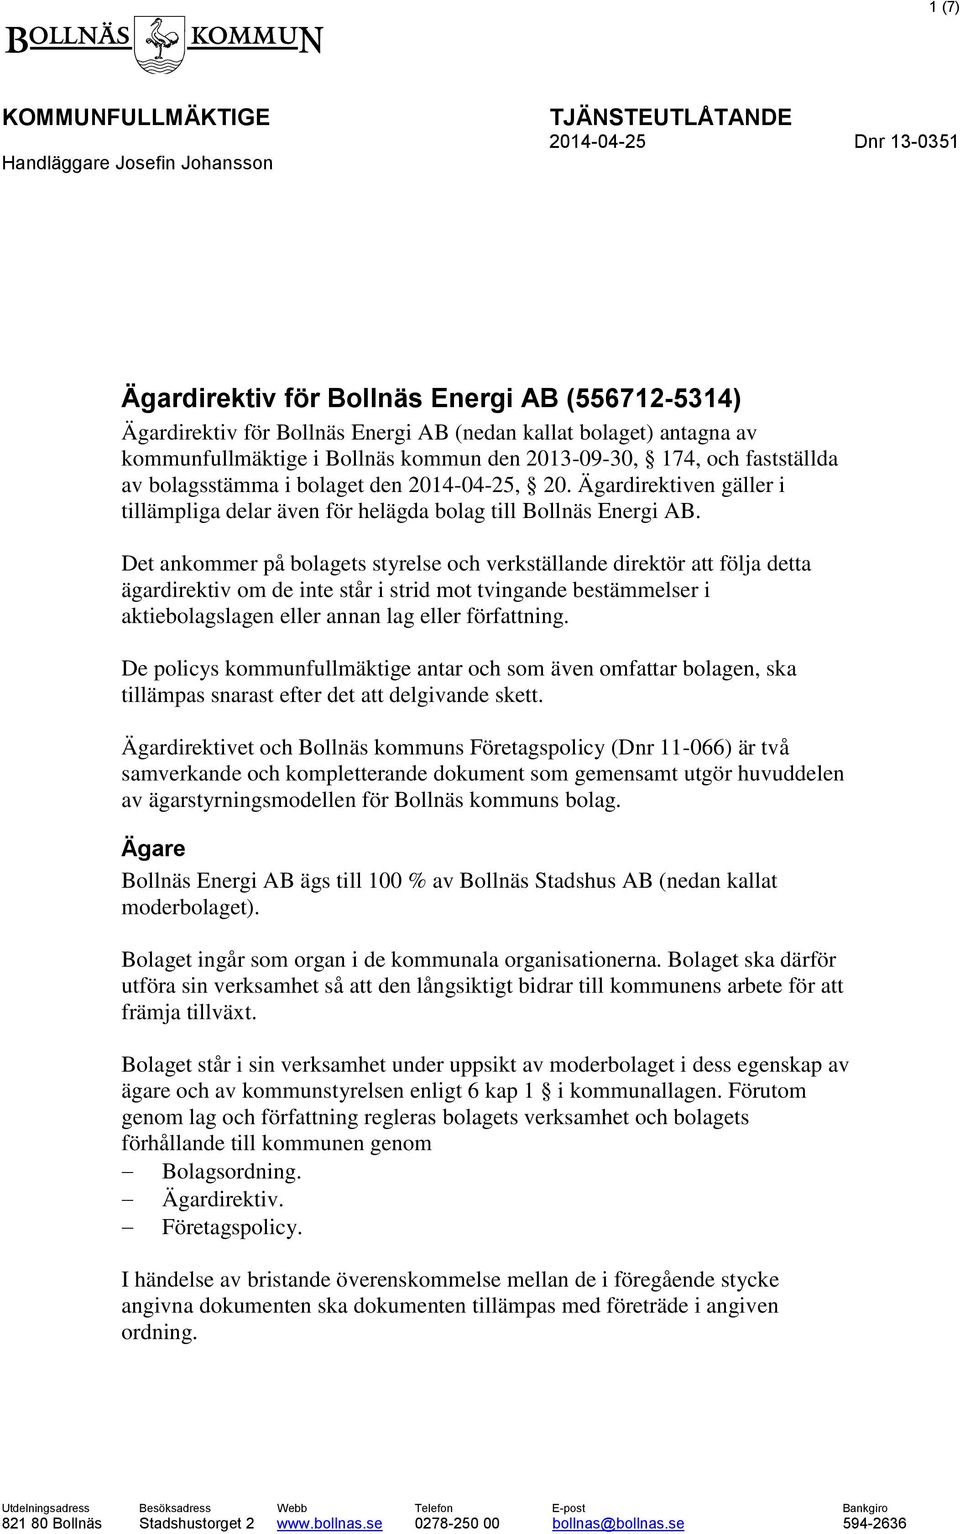 Ägardirektiven gäller i tillämpliga delar även för helägda bolag till Bollnäs Energi AB.